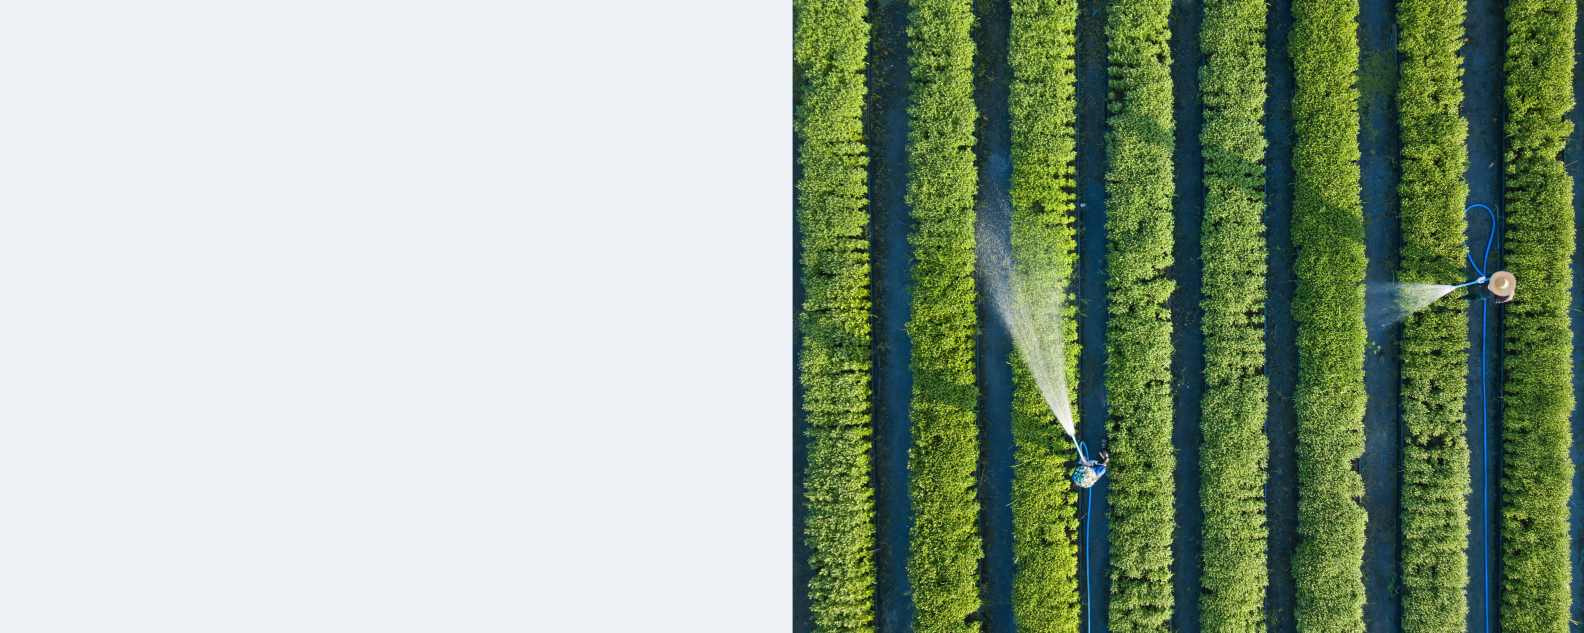 畝に植えられた庭でホースを使って野菜に水をやる農家の上空からの眺め。